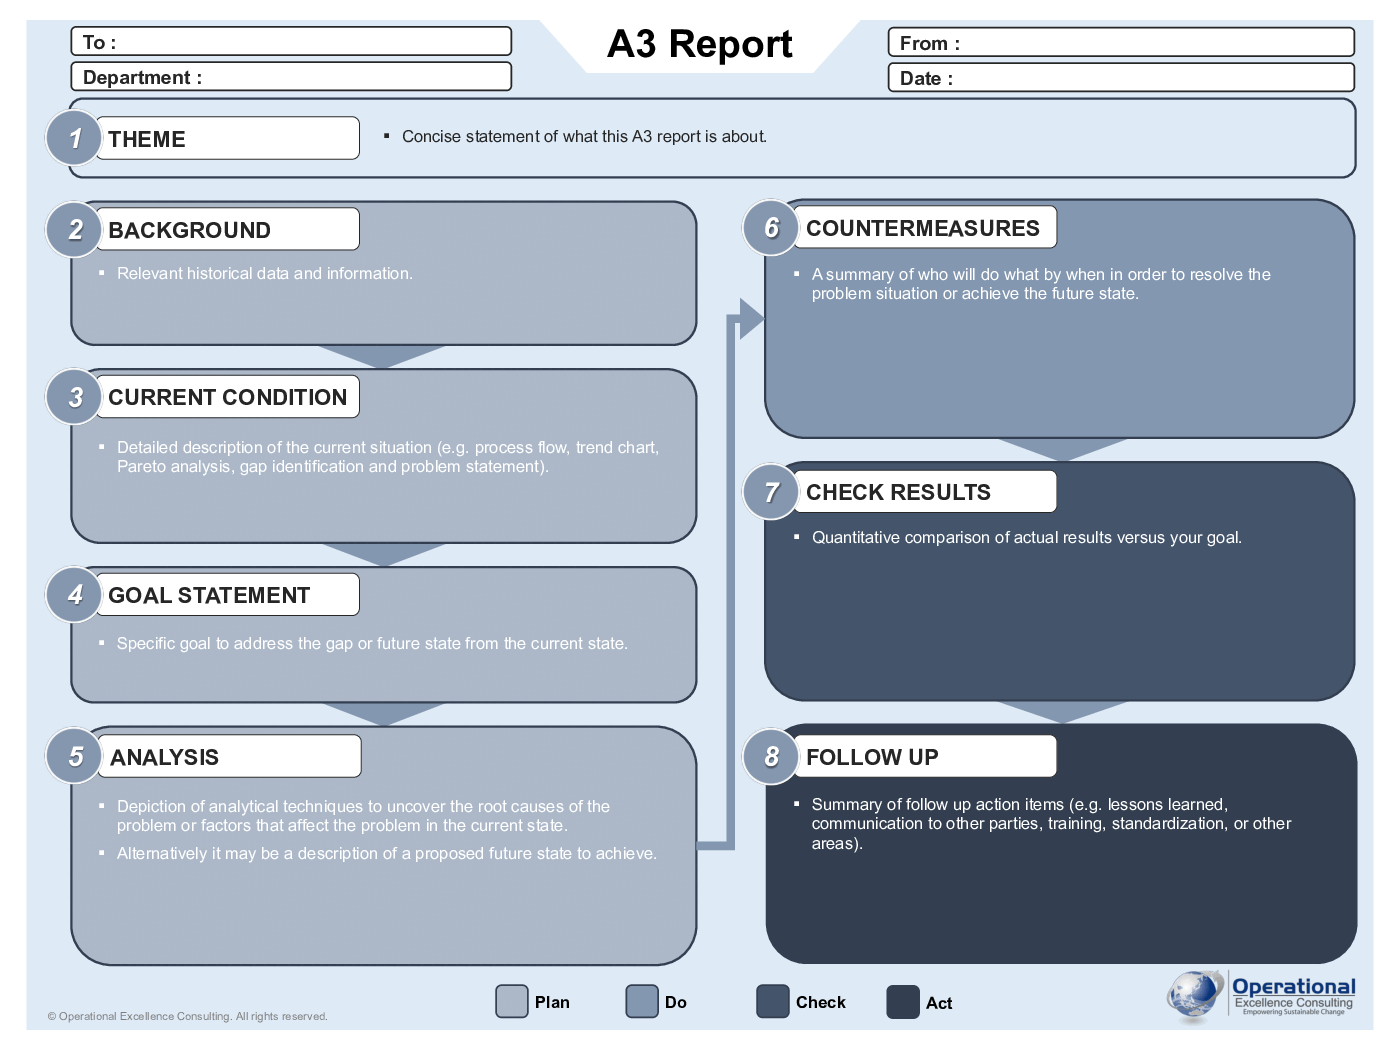 A3 Report (A3 Problem Solving) Poster